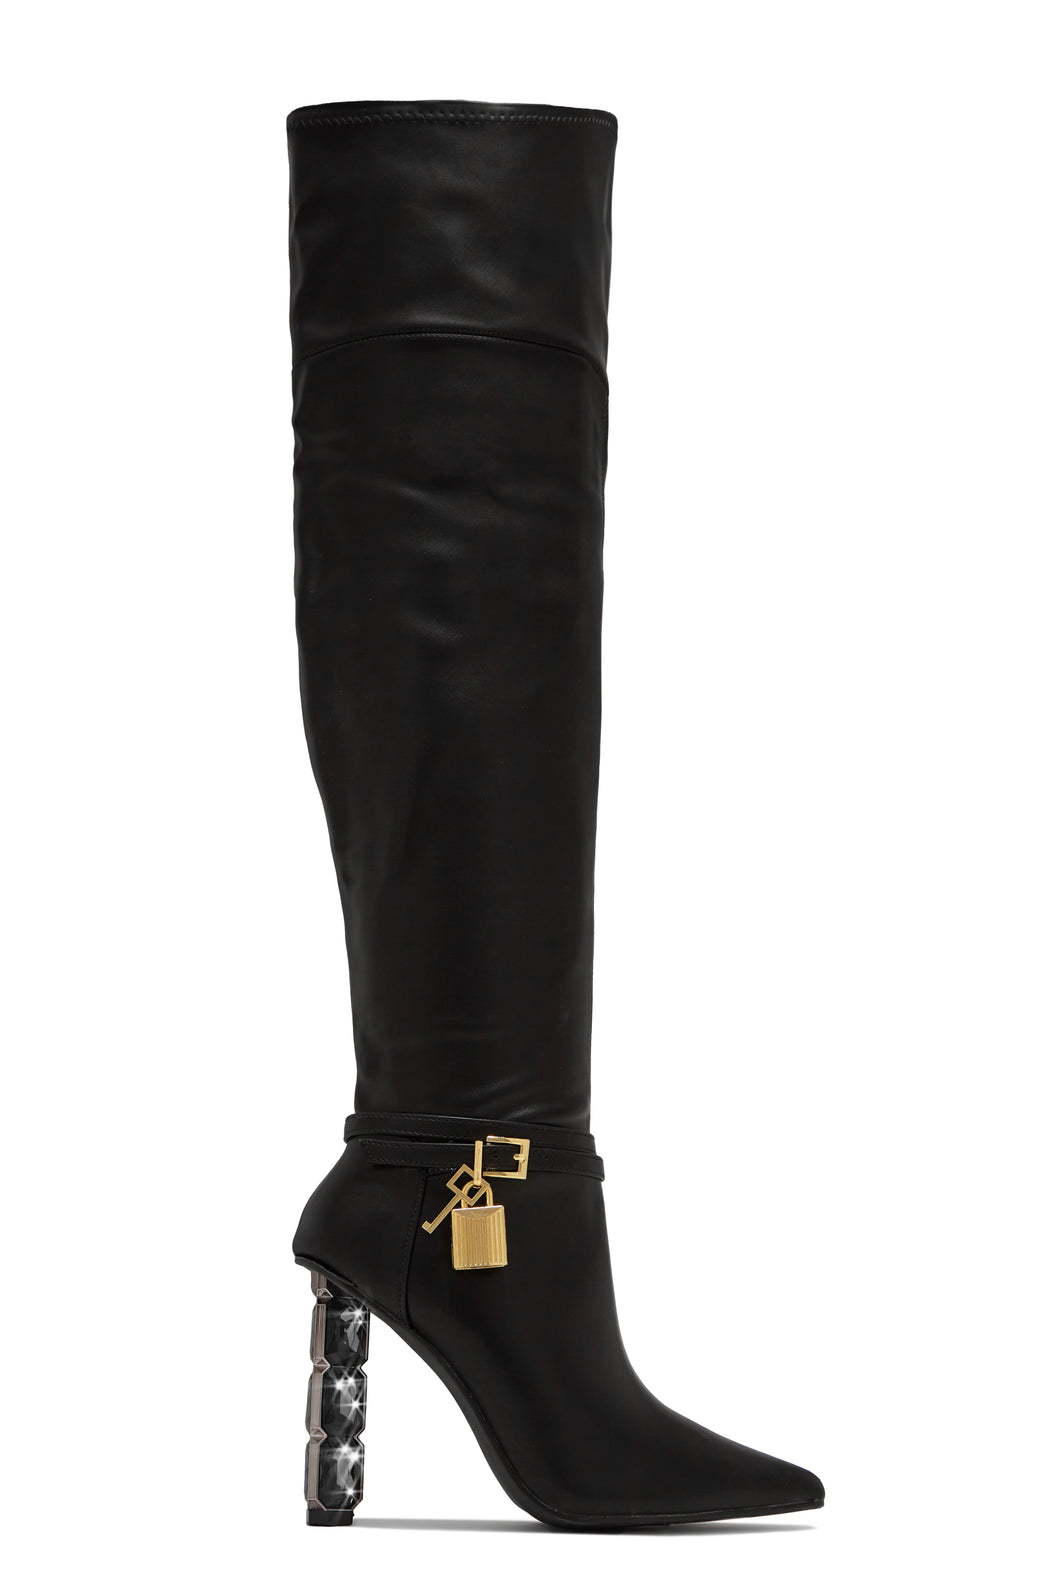 Samira Embellished Heel Over The Knee Boots - Black